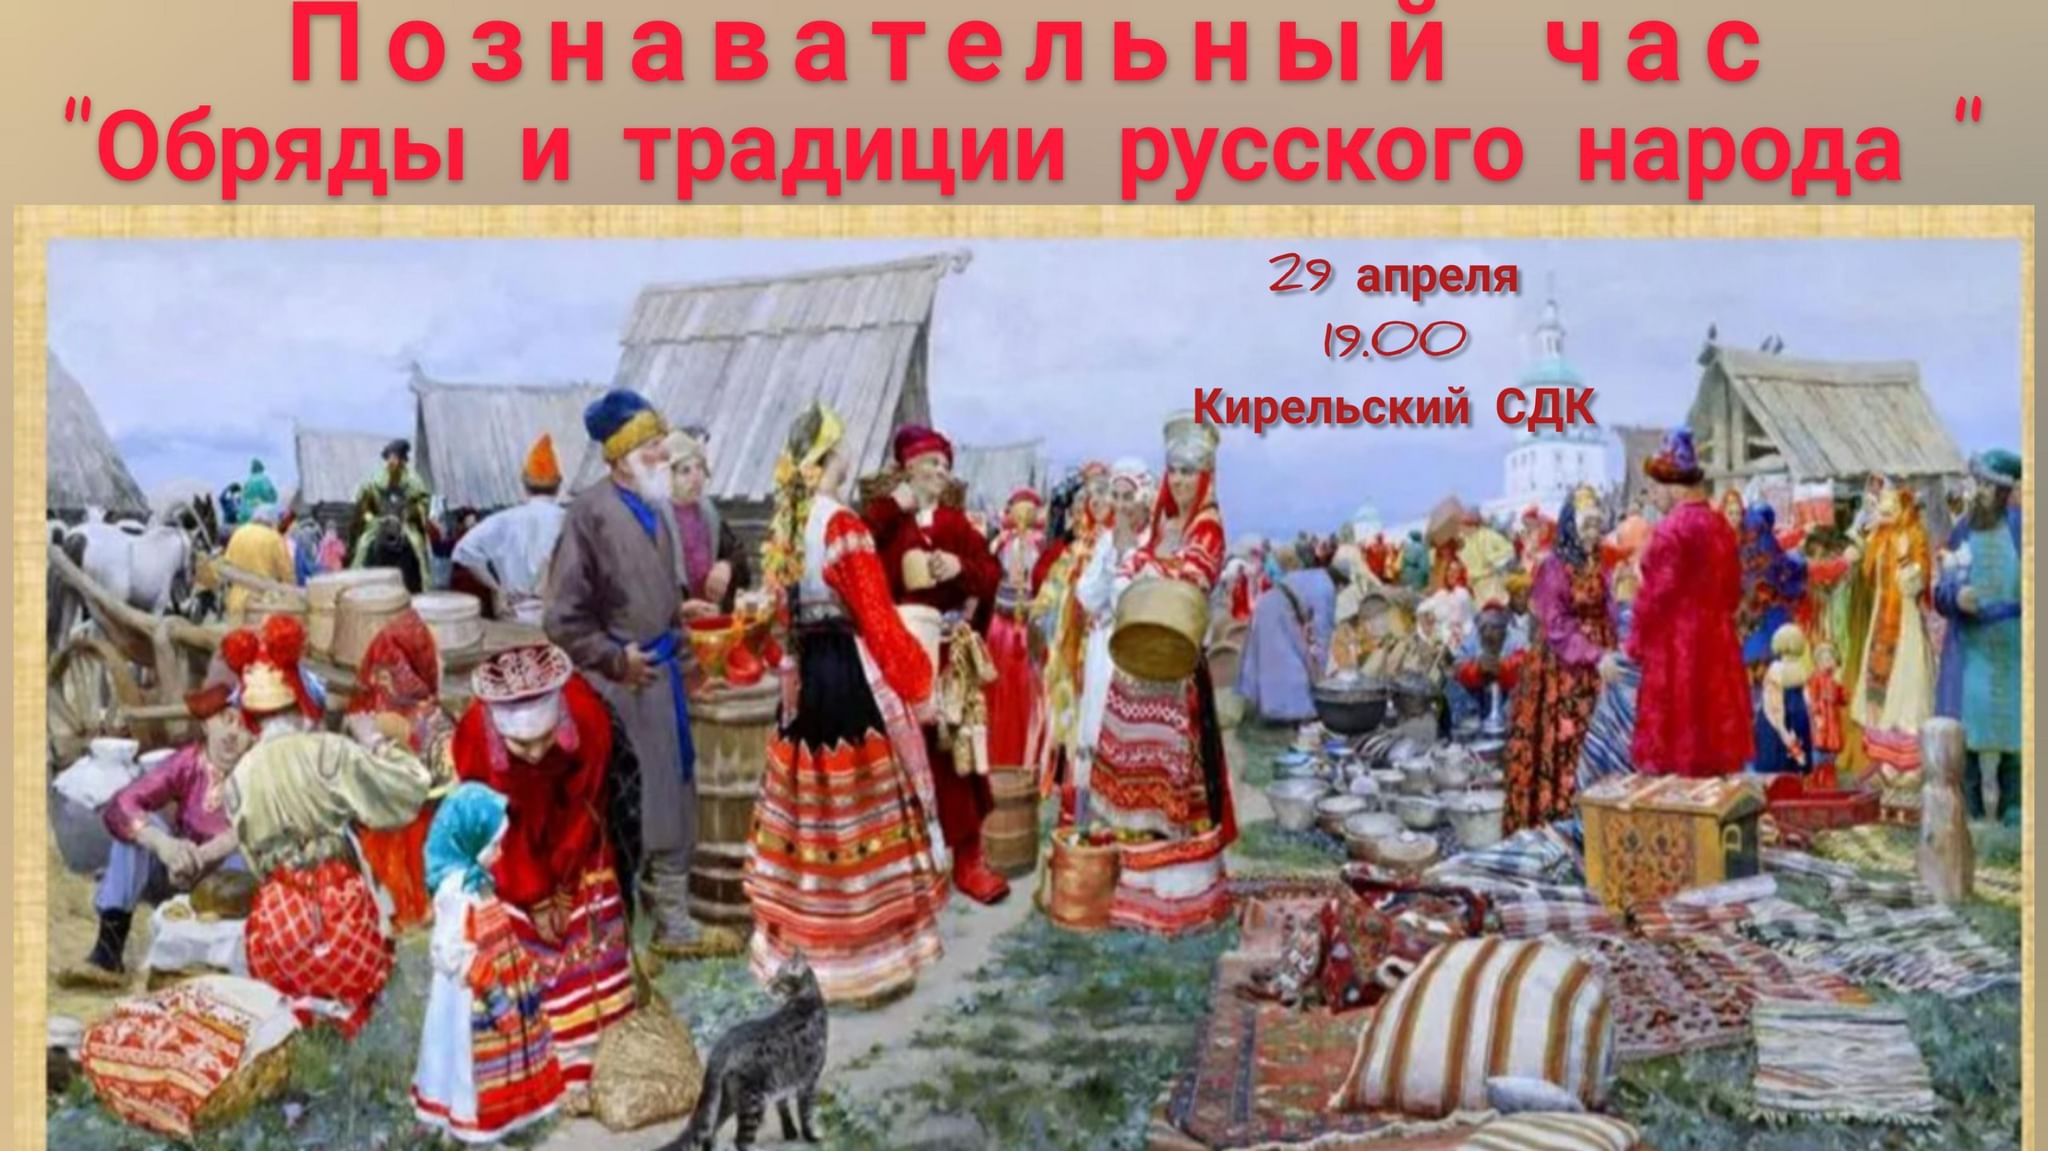 Познавательный час «обряды и традиции русского народа»